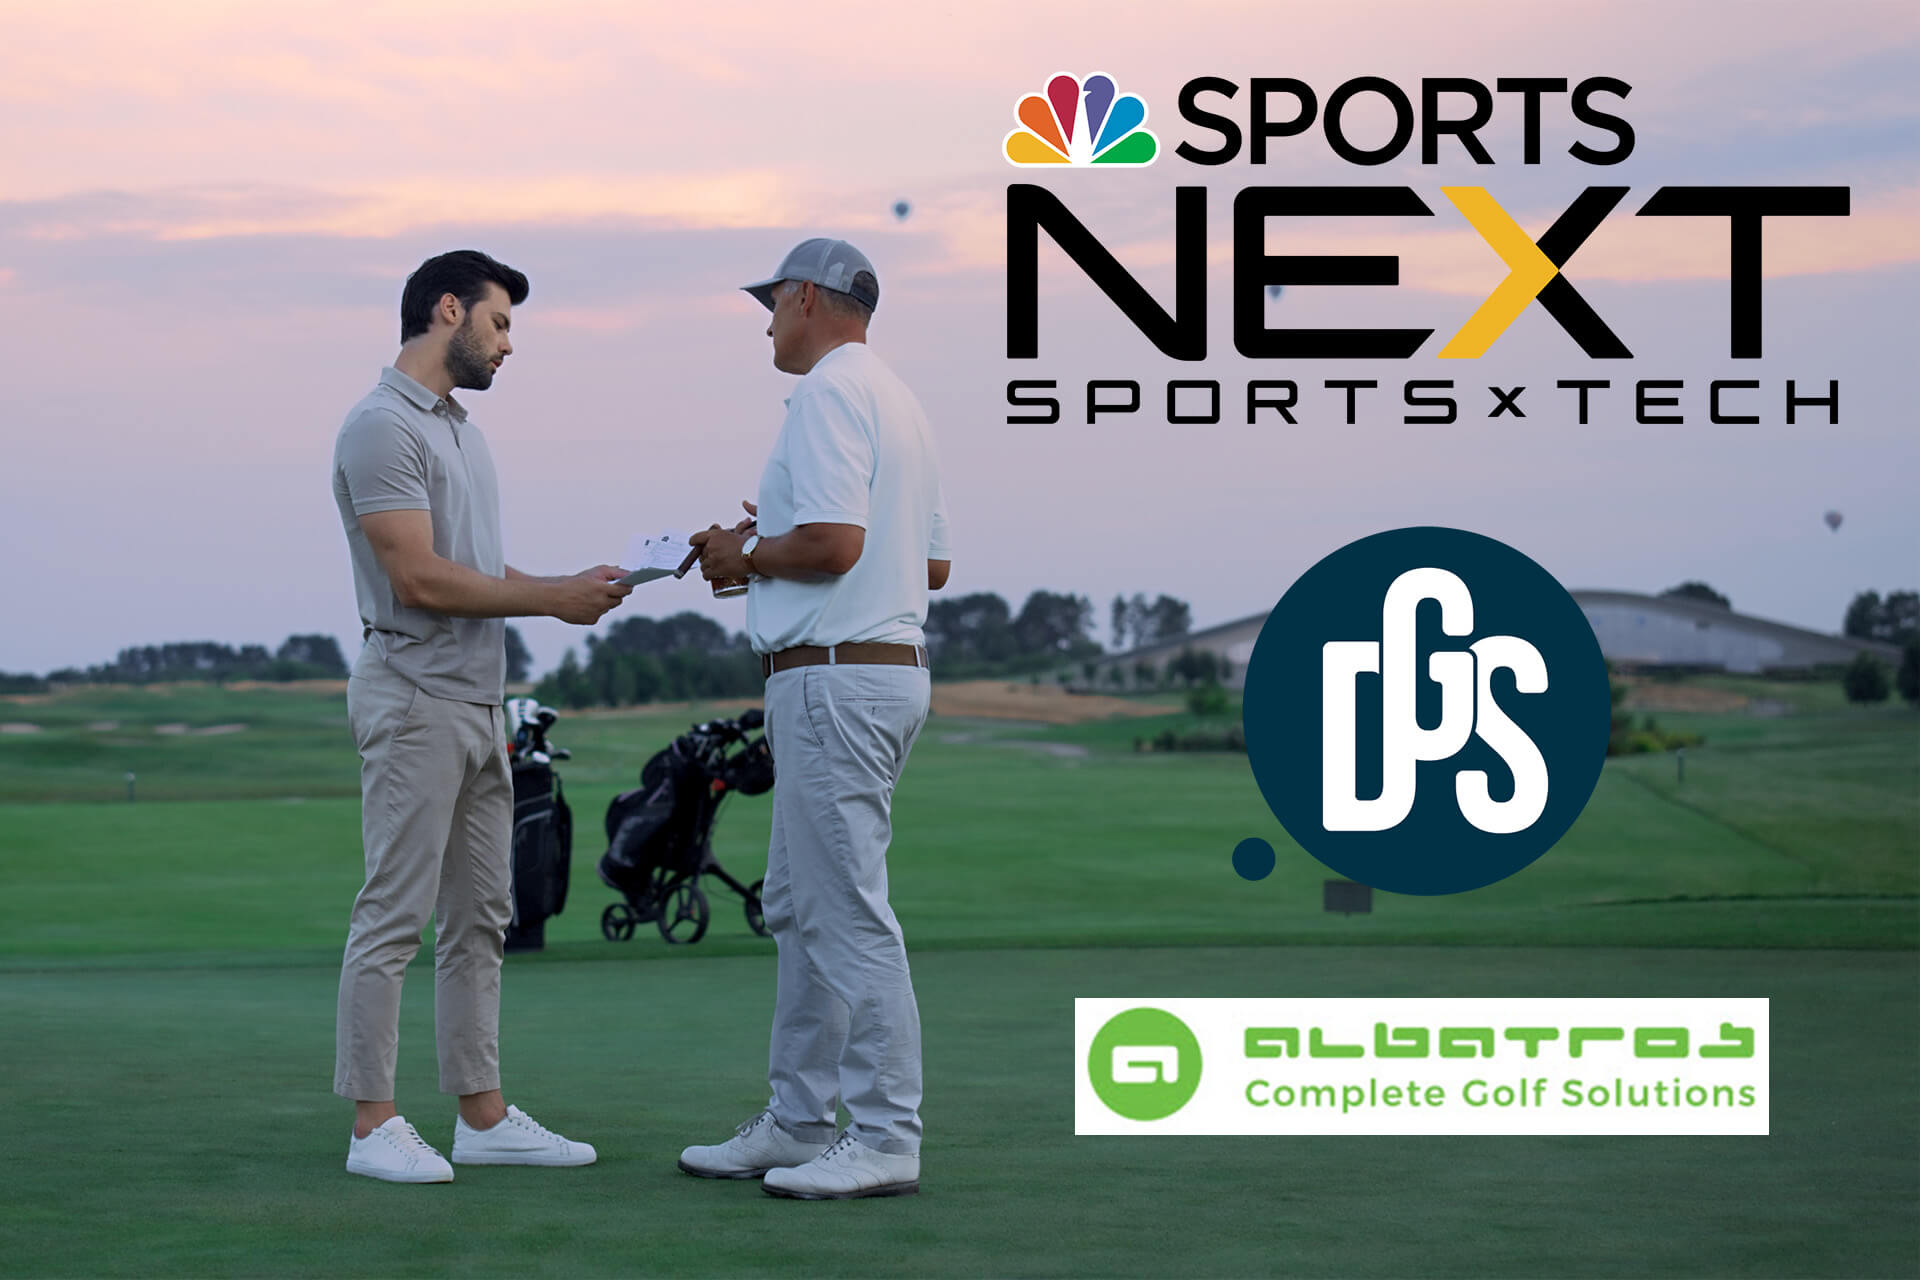 NBC Sports Next erwirbt zwei europäische Technologieunternehmen